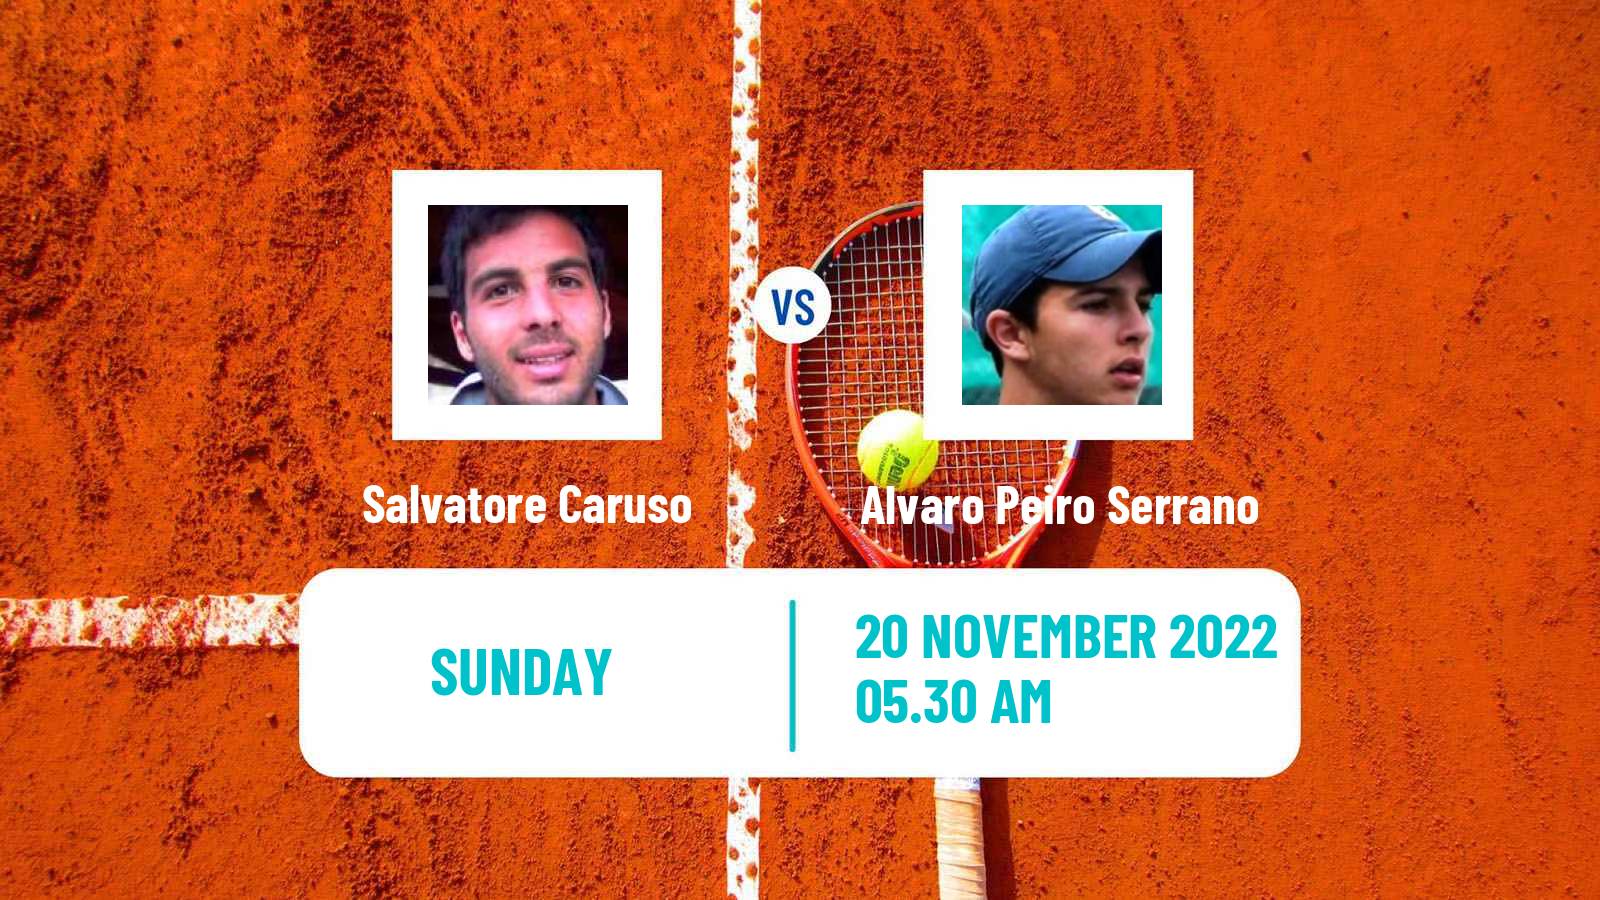 Tennis ATP Challenger Salvatore Caruso - Alvaro Peiro Serrano